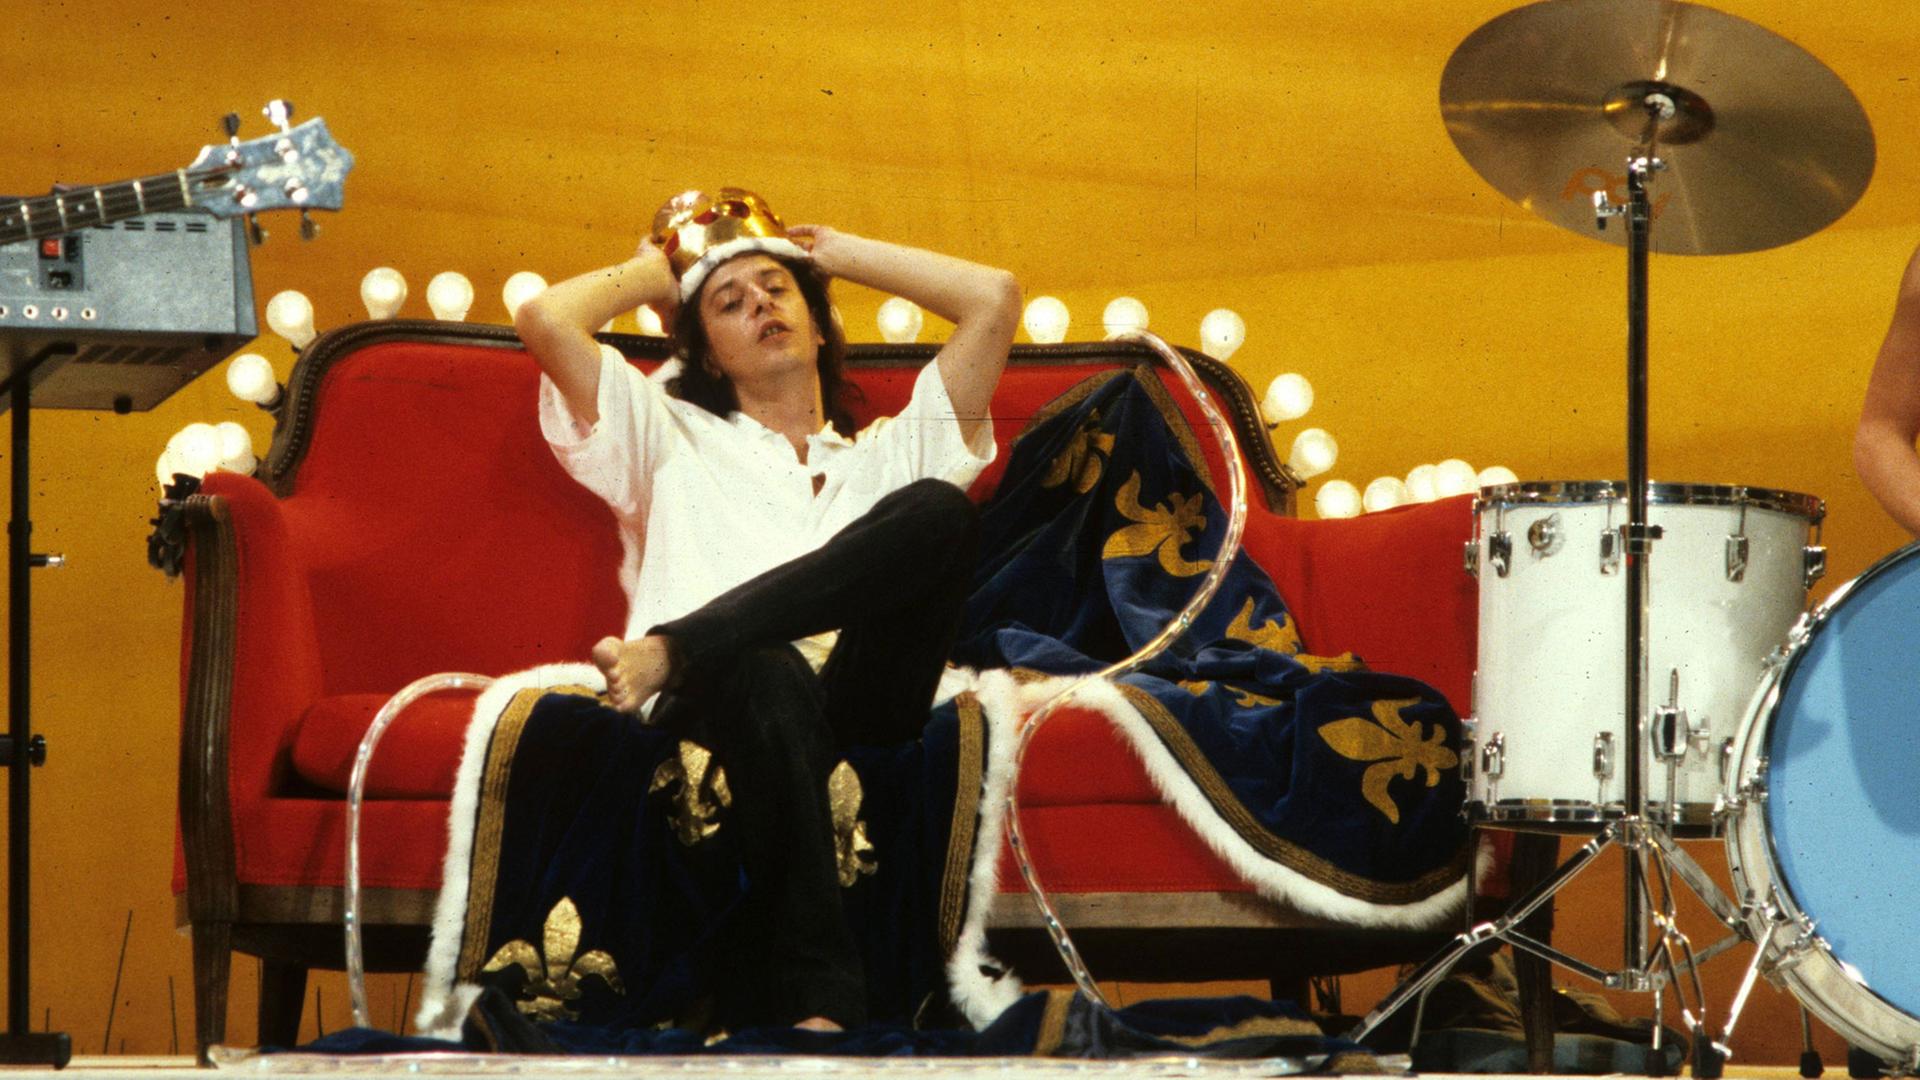 Der Sänger Rio Reiser liegt auf einem roten Sofa, dessen Lehne mit einer Lichterkette geschmückt ist und trägt eine goldete Krone aus Plastik.